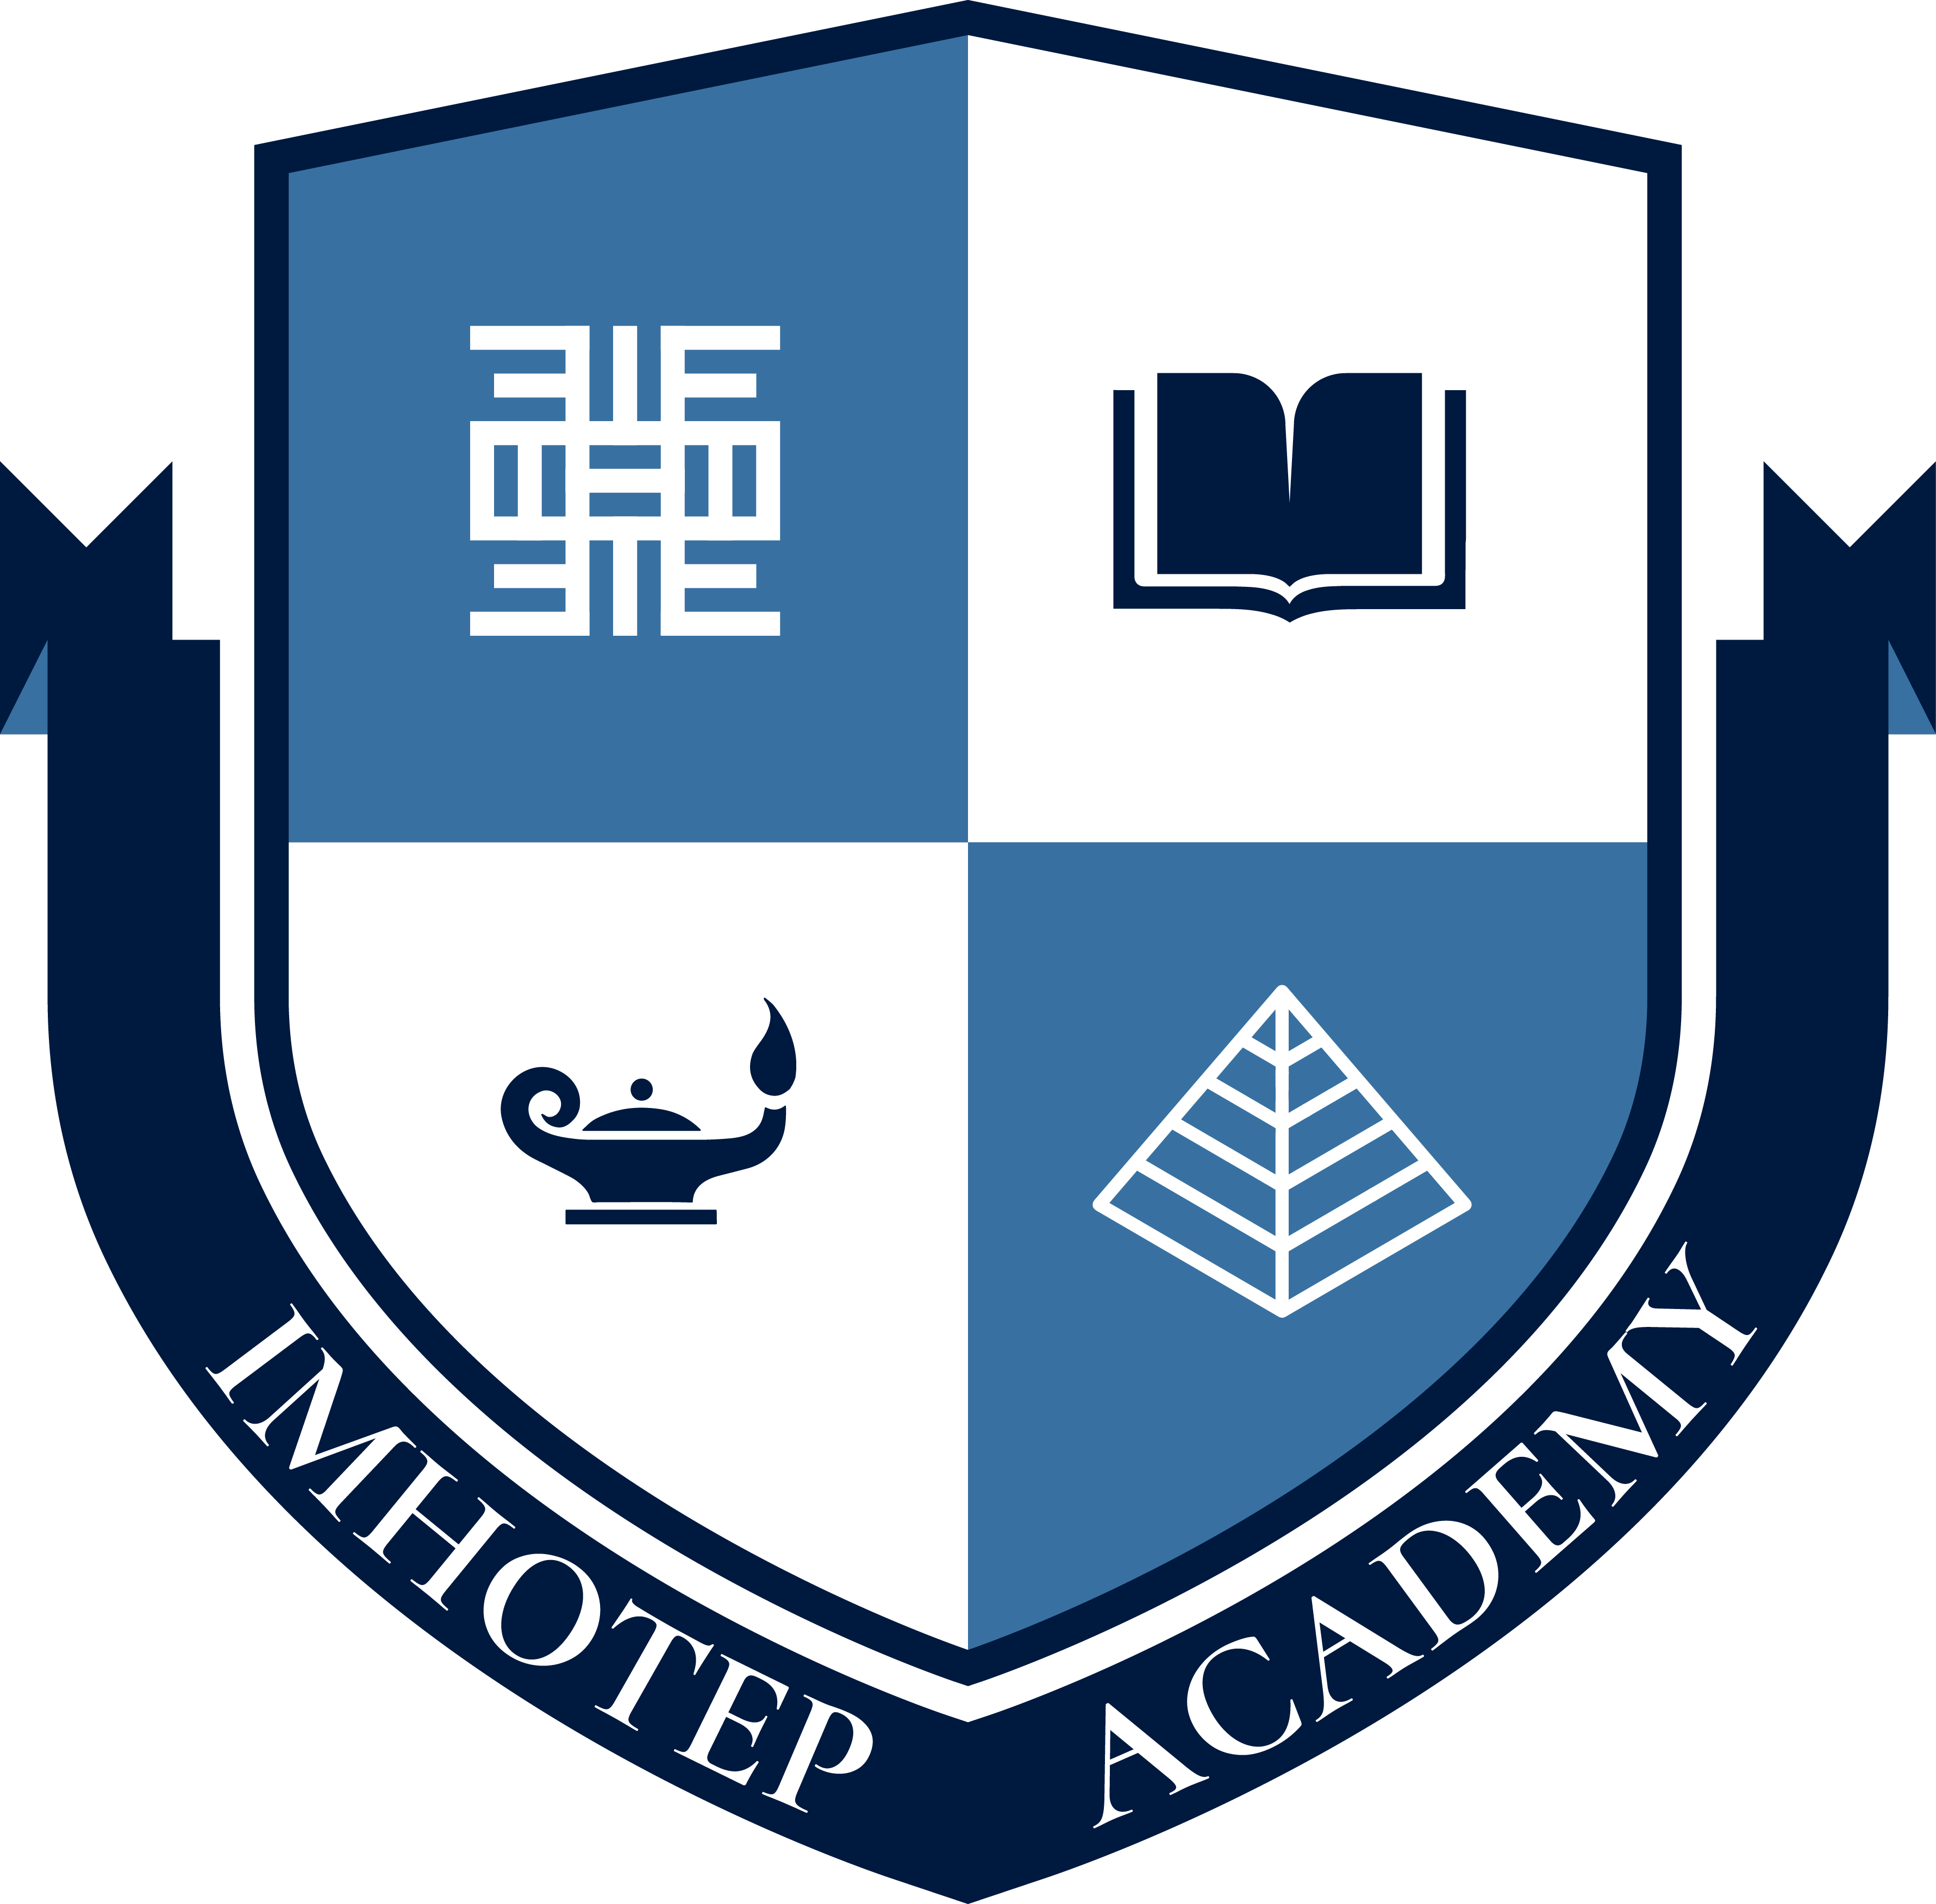 Imhotep Academy logo